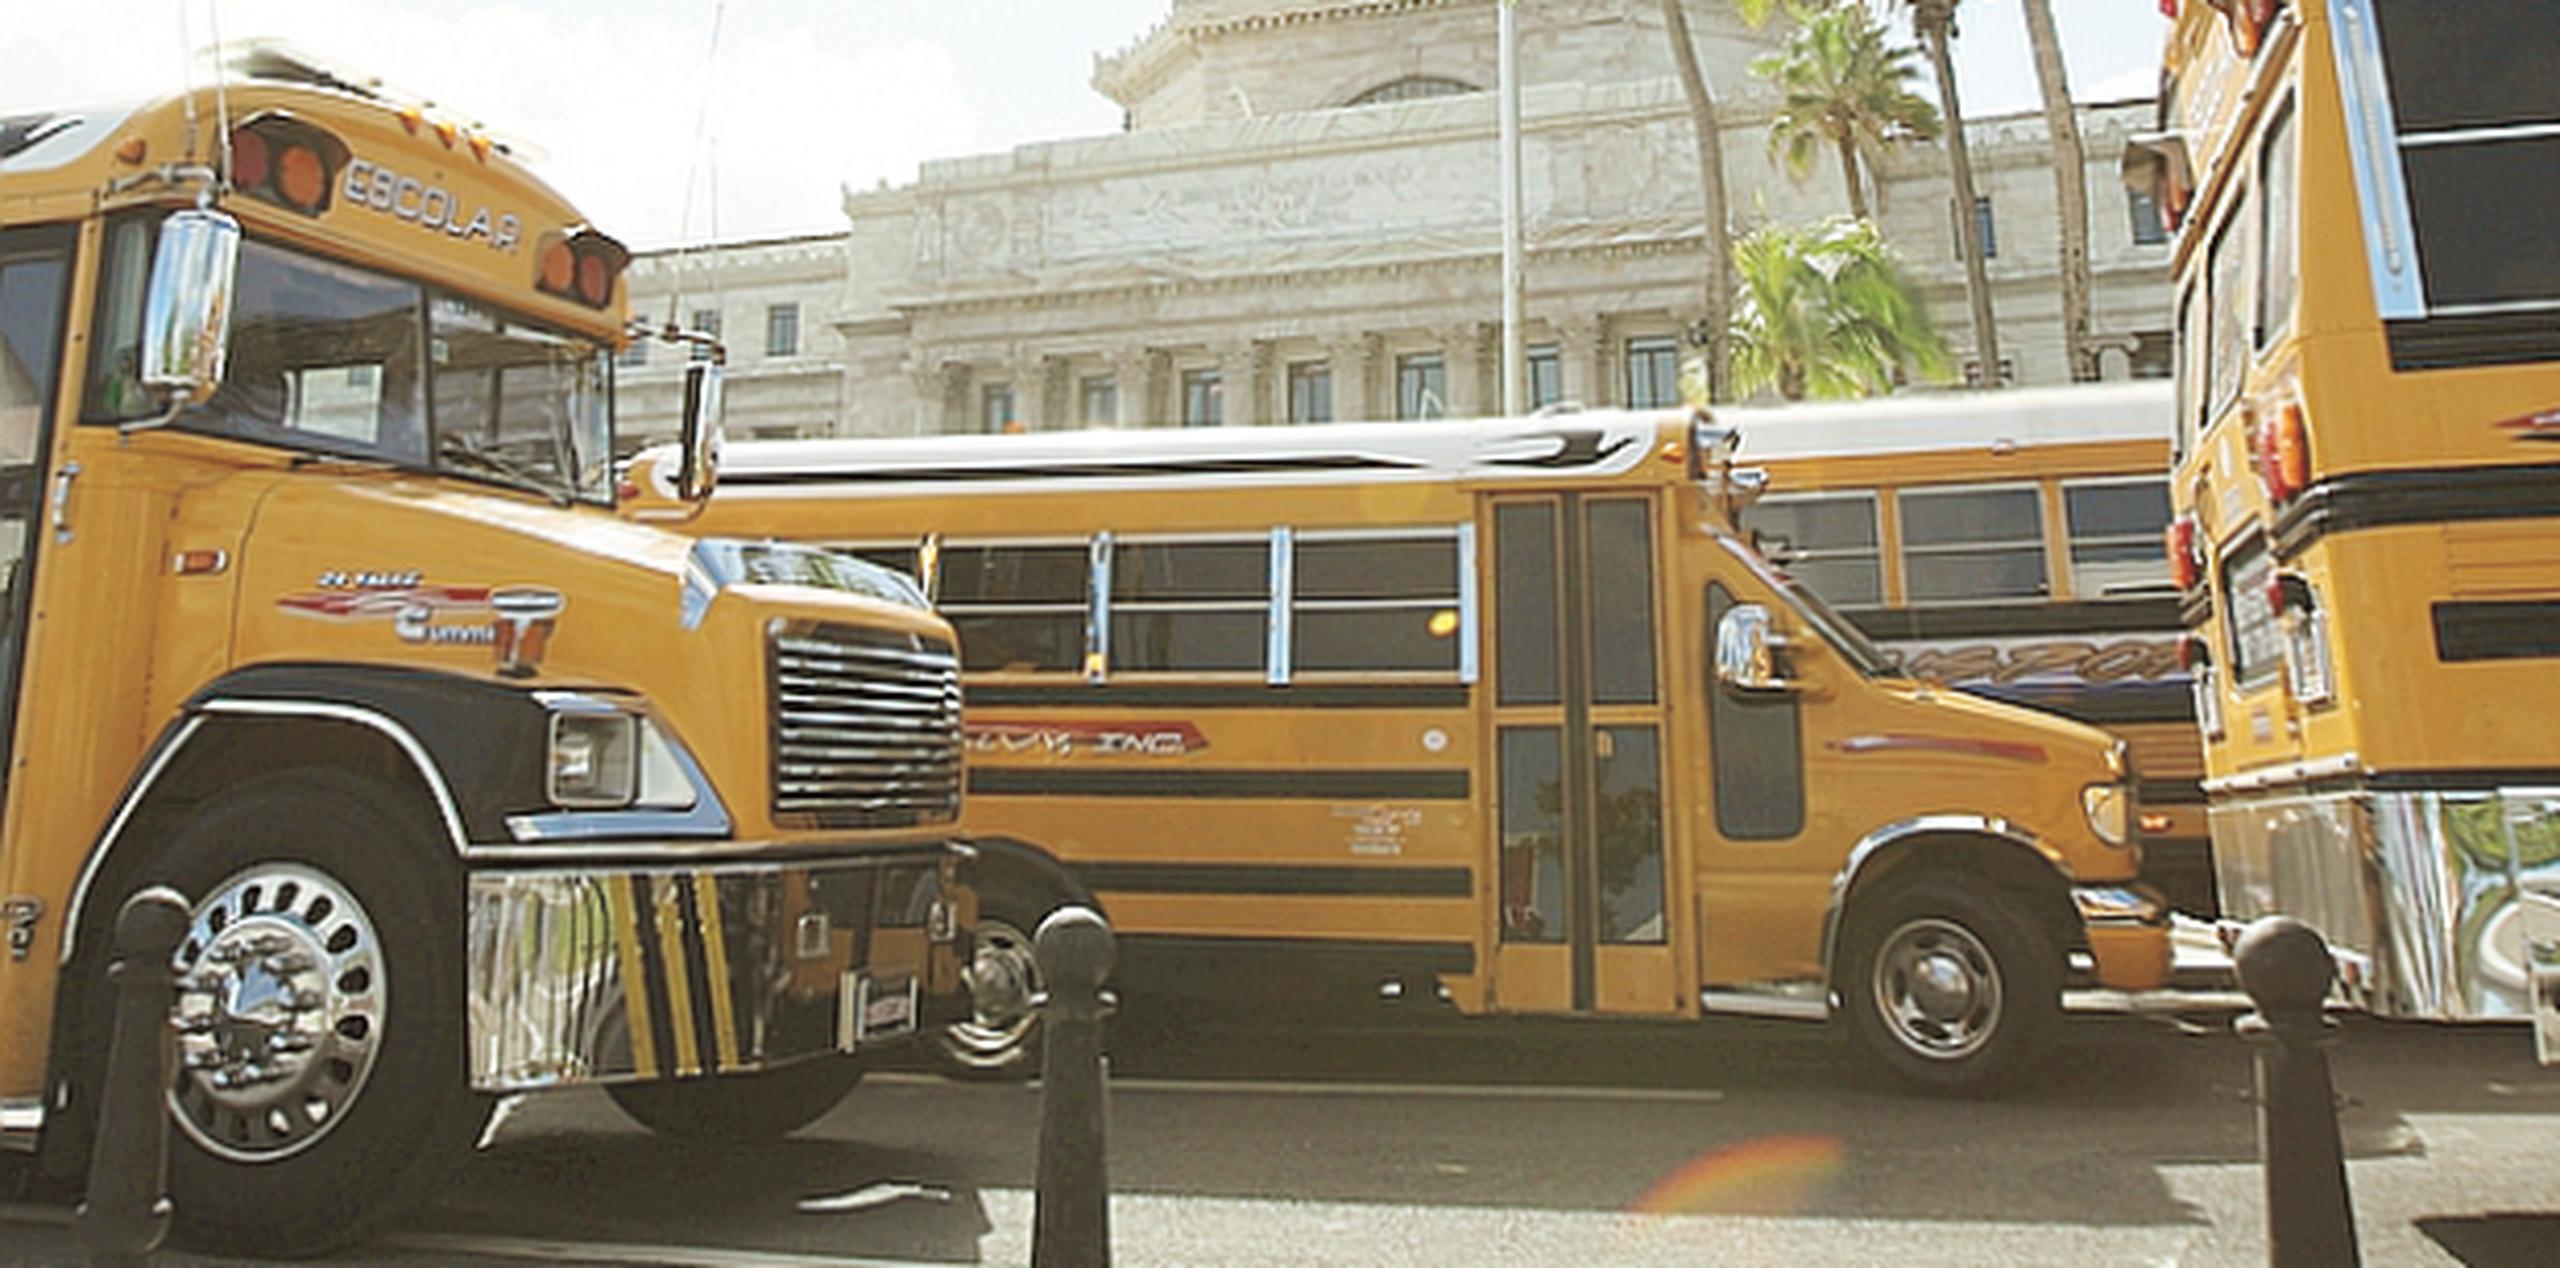 Representantes de los porteadores escolares dijeron que el Departamento de Educación se comprometió a continuar gestionando los pagos que adeudan a los transportistas. (Archivo)